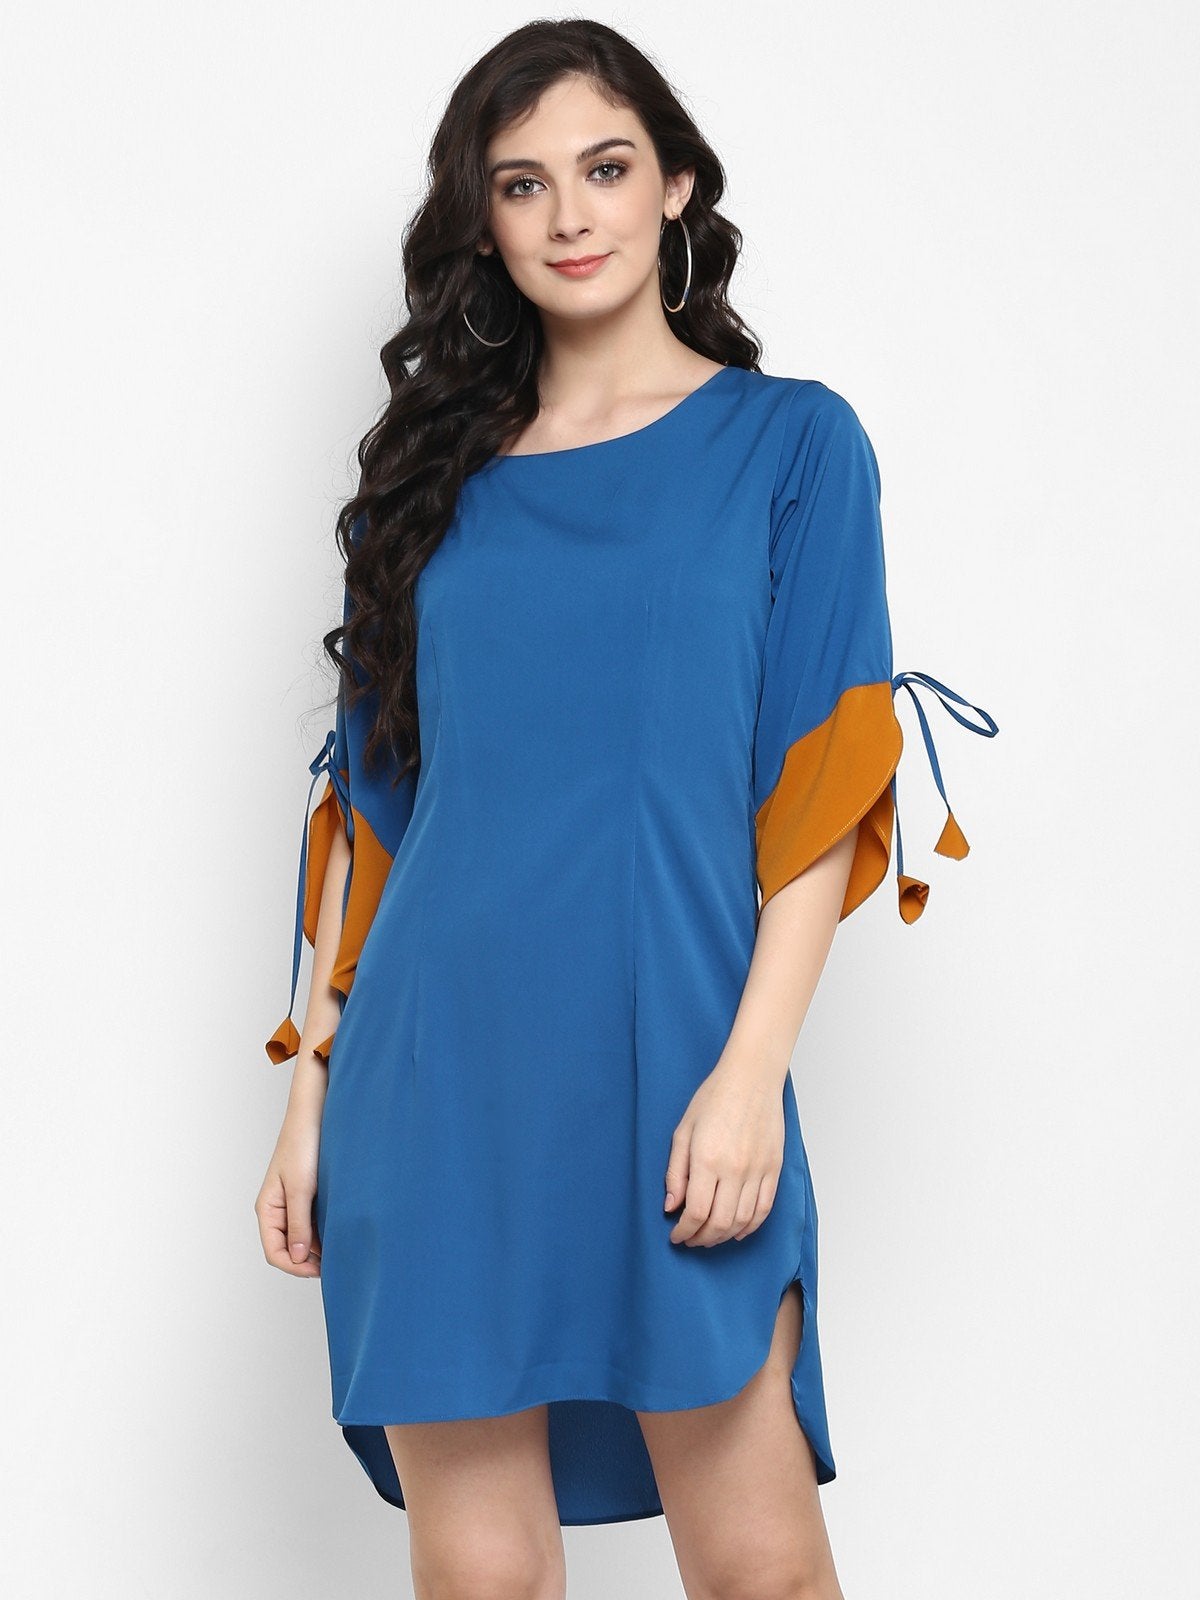 Women's Solid Color-Block Dress - Pannkh